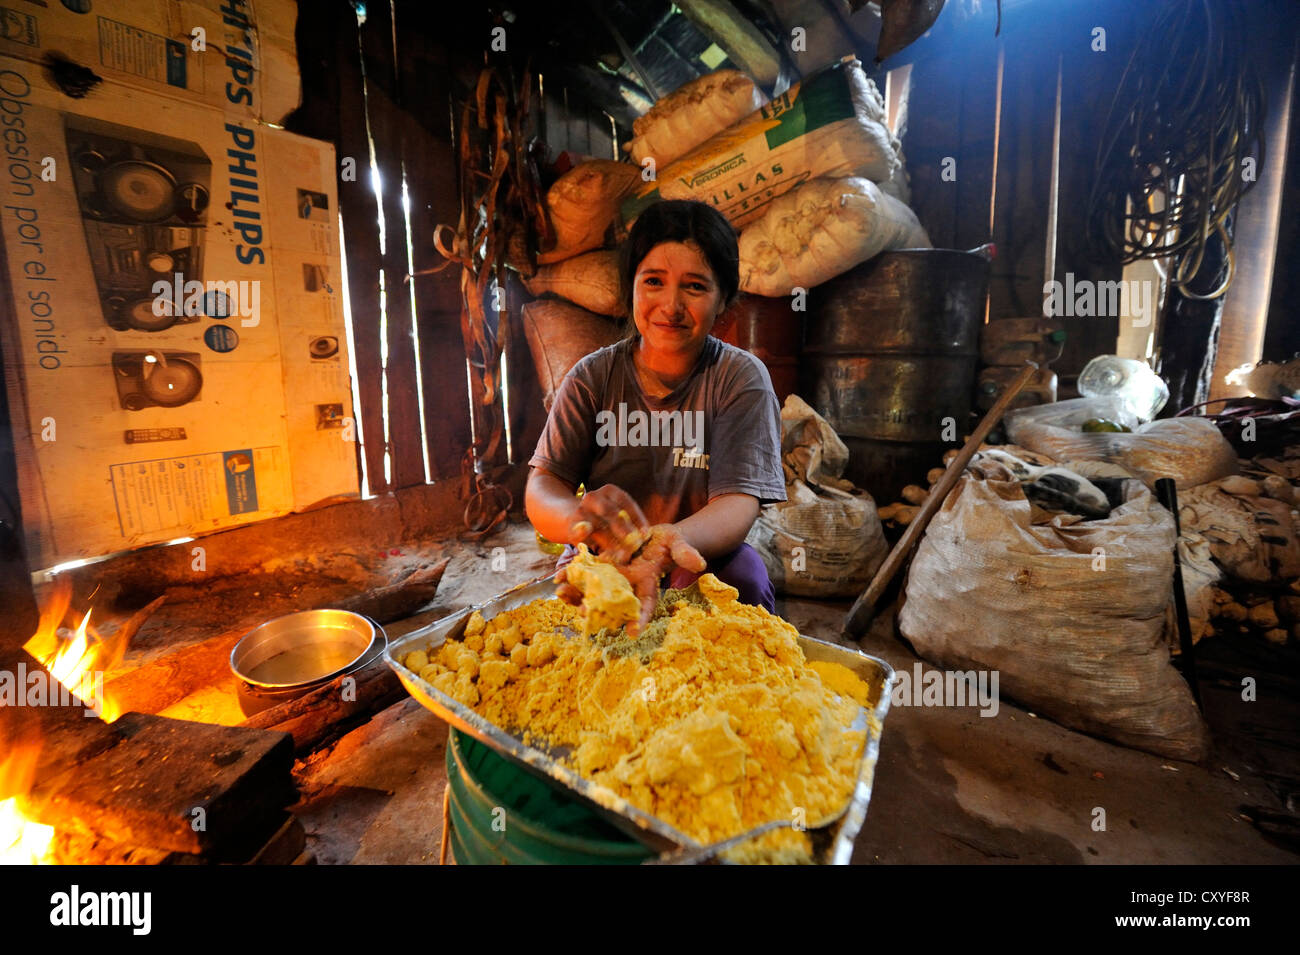 Frau, die Vorbereitung der traditionellen Teller "Bory Bory" in einer einfachen Küche am offenen Feuer, Suppe mit Mais Knödel Stockfoto